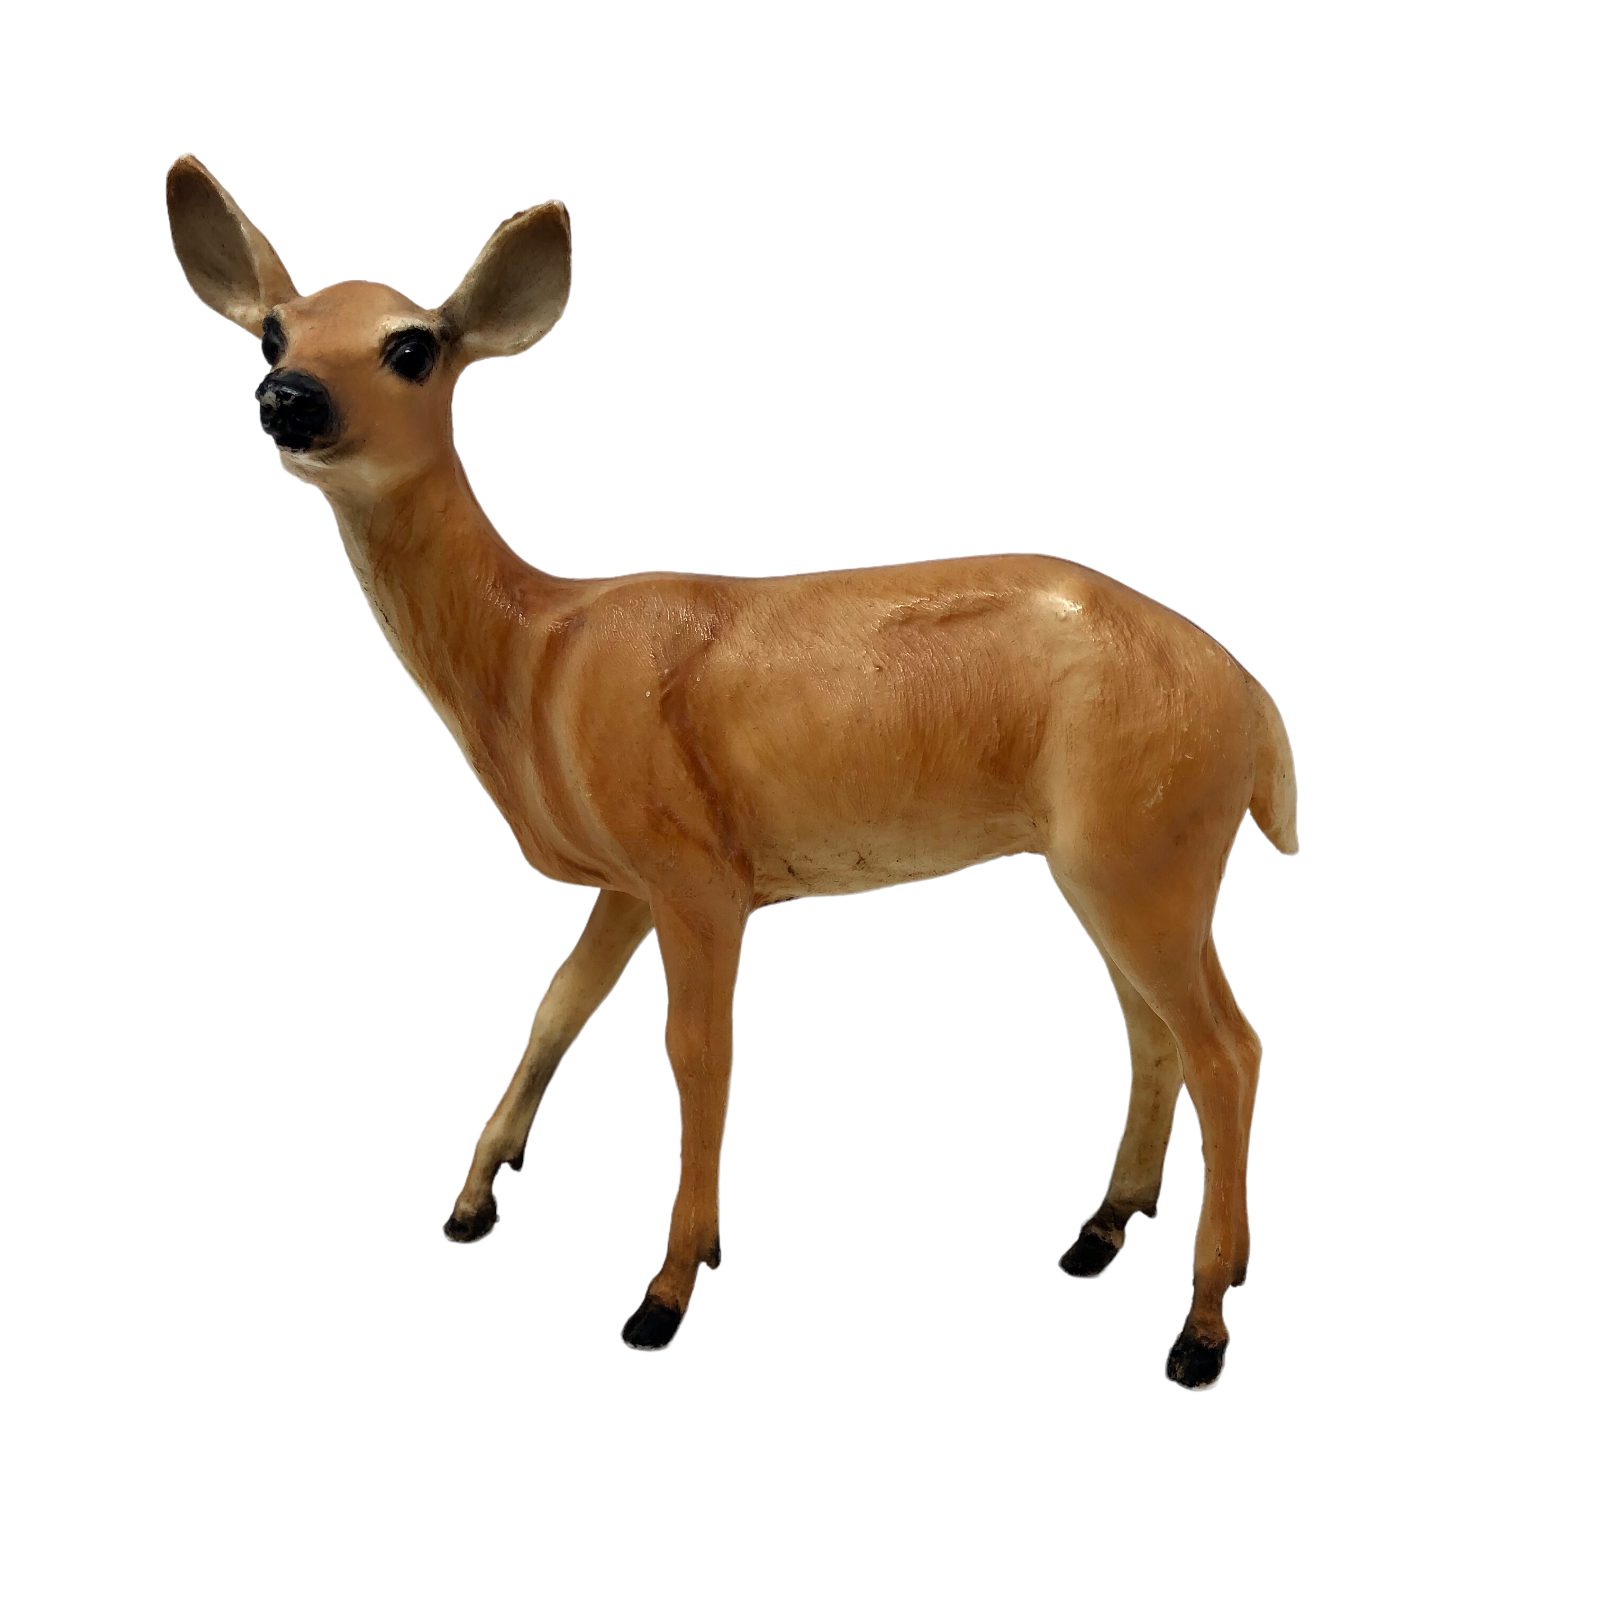 VTG Breyer Doe # 32 Whitetail Deer Figurine White Underside Black Muzzle - $34.64